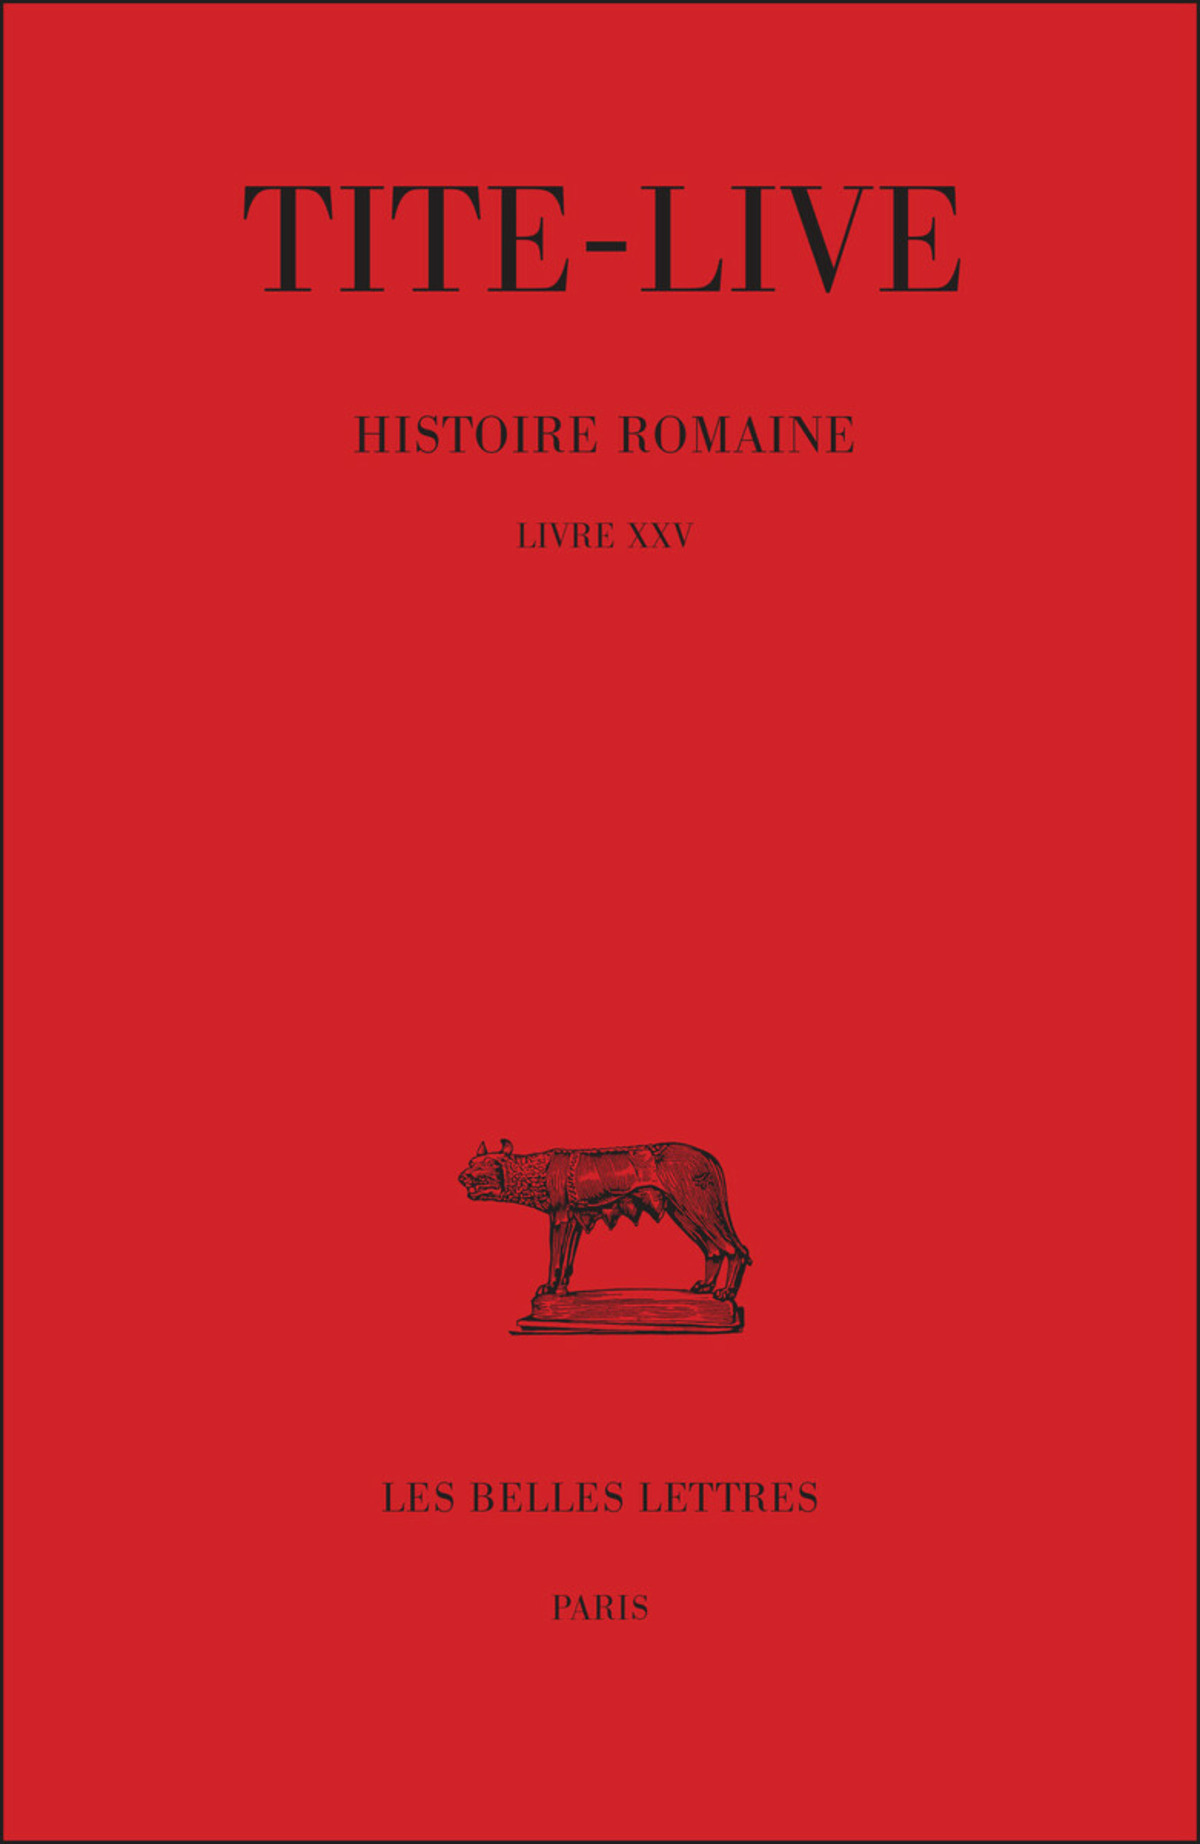 Histoire romaine. Tome XV : Livre XXV